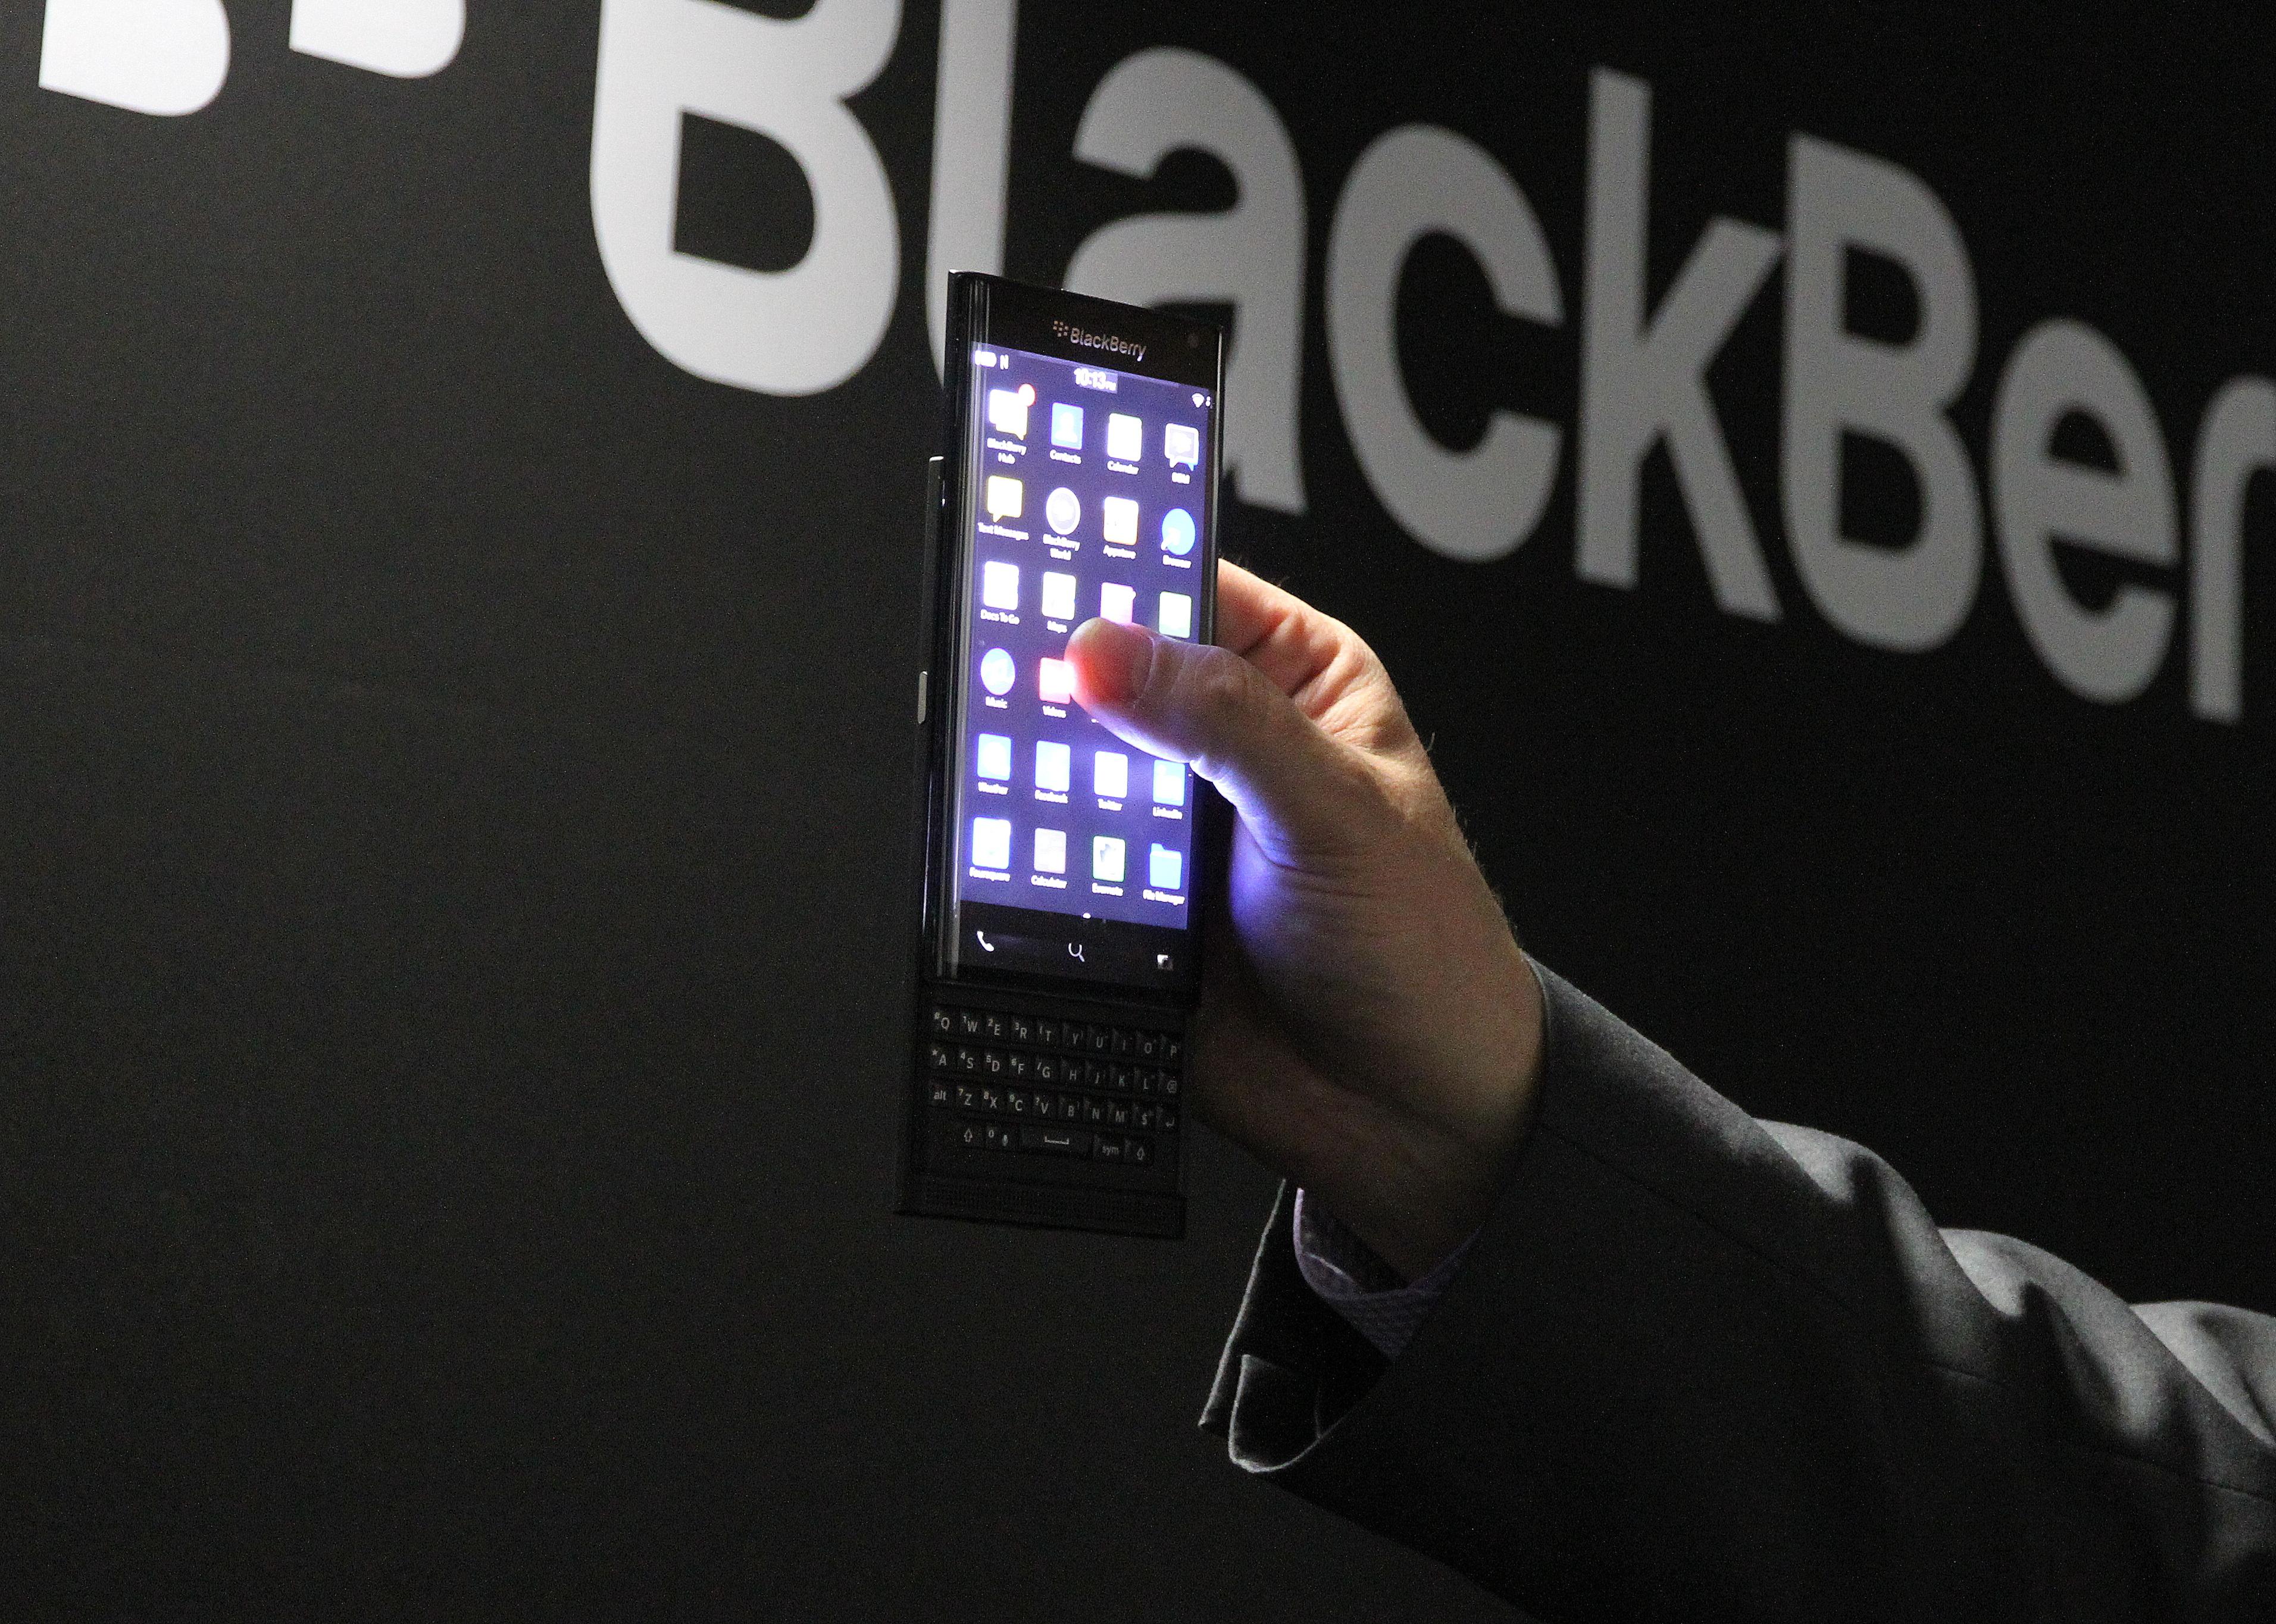 Dette er den nye tastaturtelefonen BlackBerry viste frem i Mars, som kanskje kommer med Android til høsten. Foto: BlackBerry